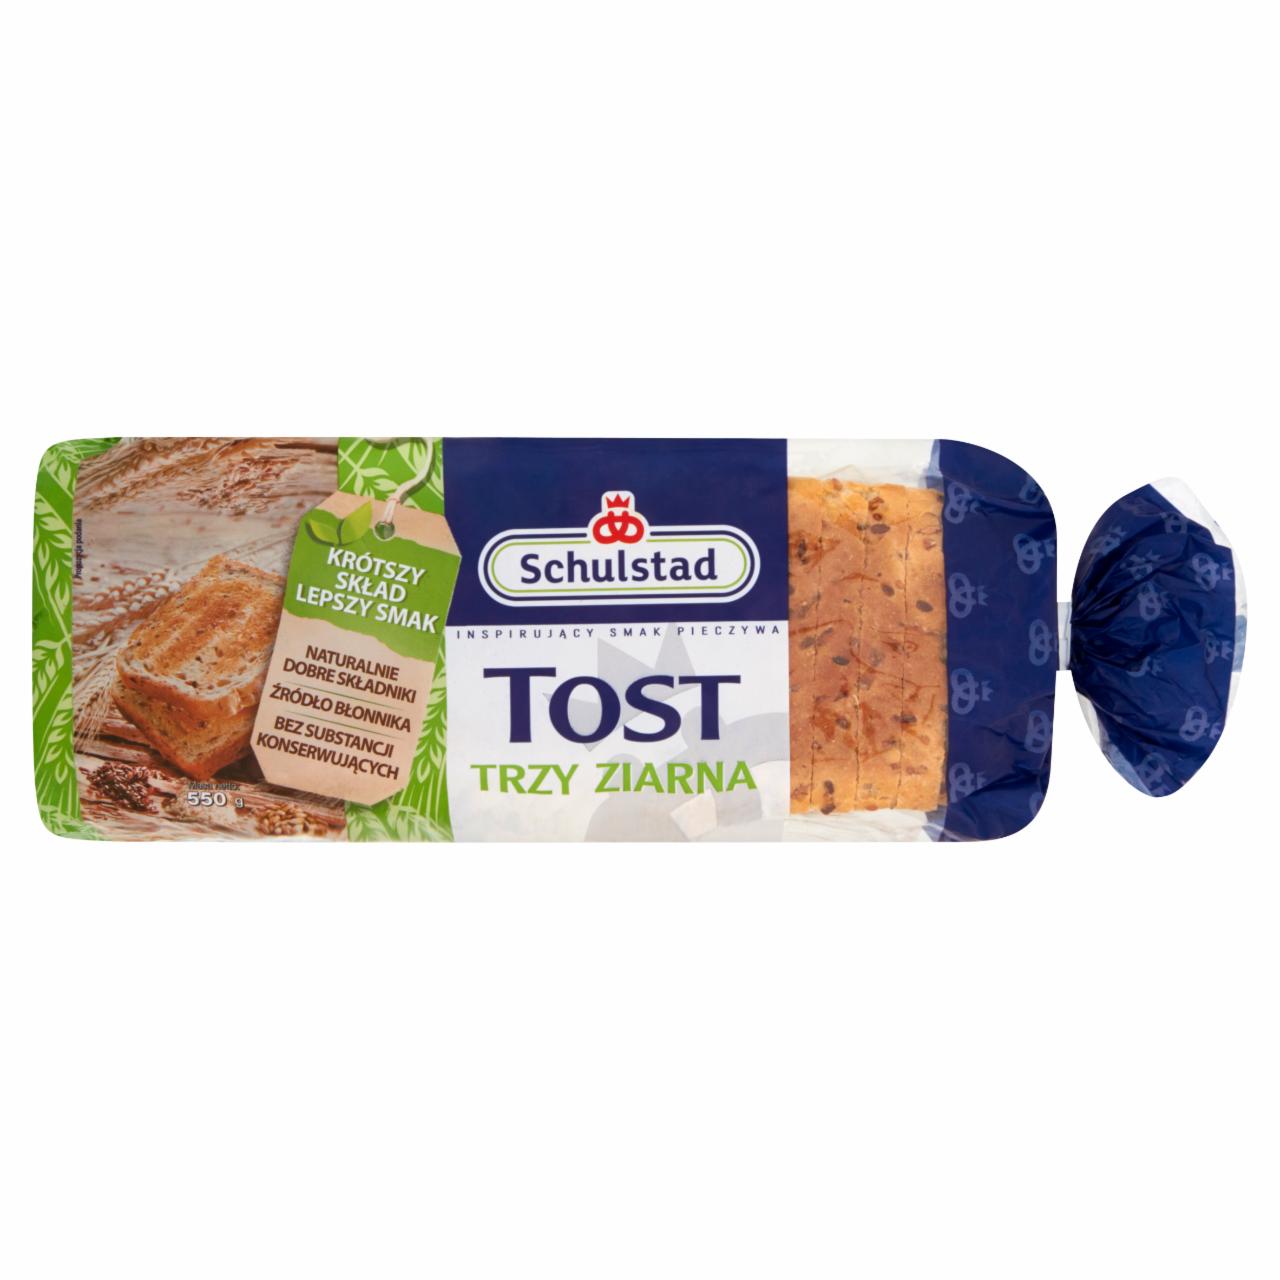 Zdjęcia - Schulstad Tost trzy ziarna Chleb tostowy 550 g